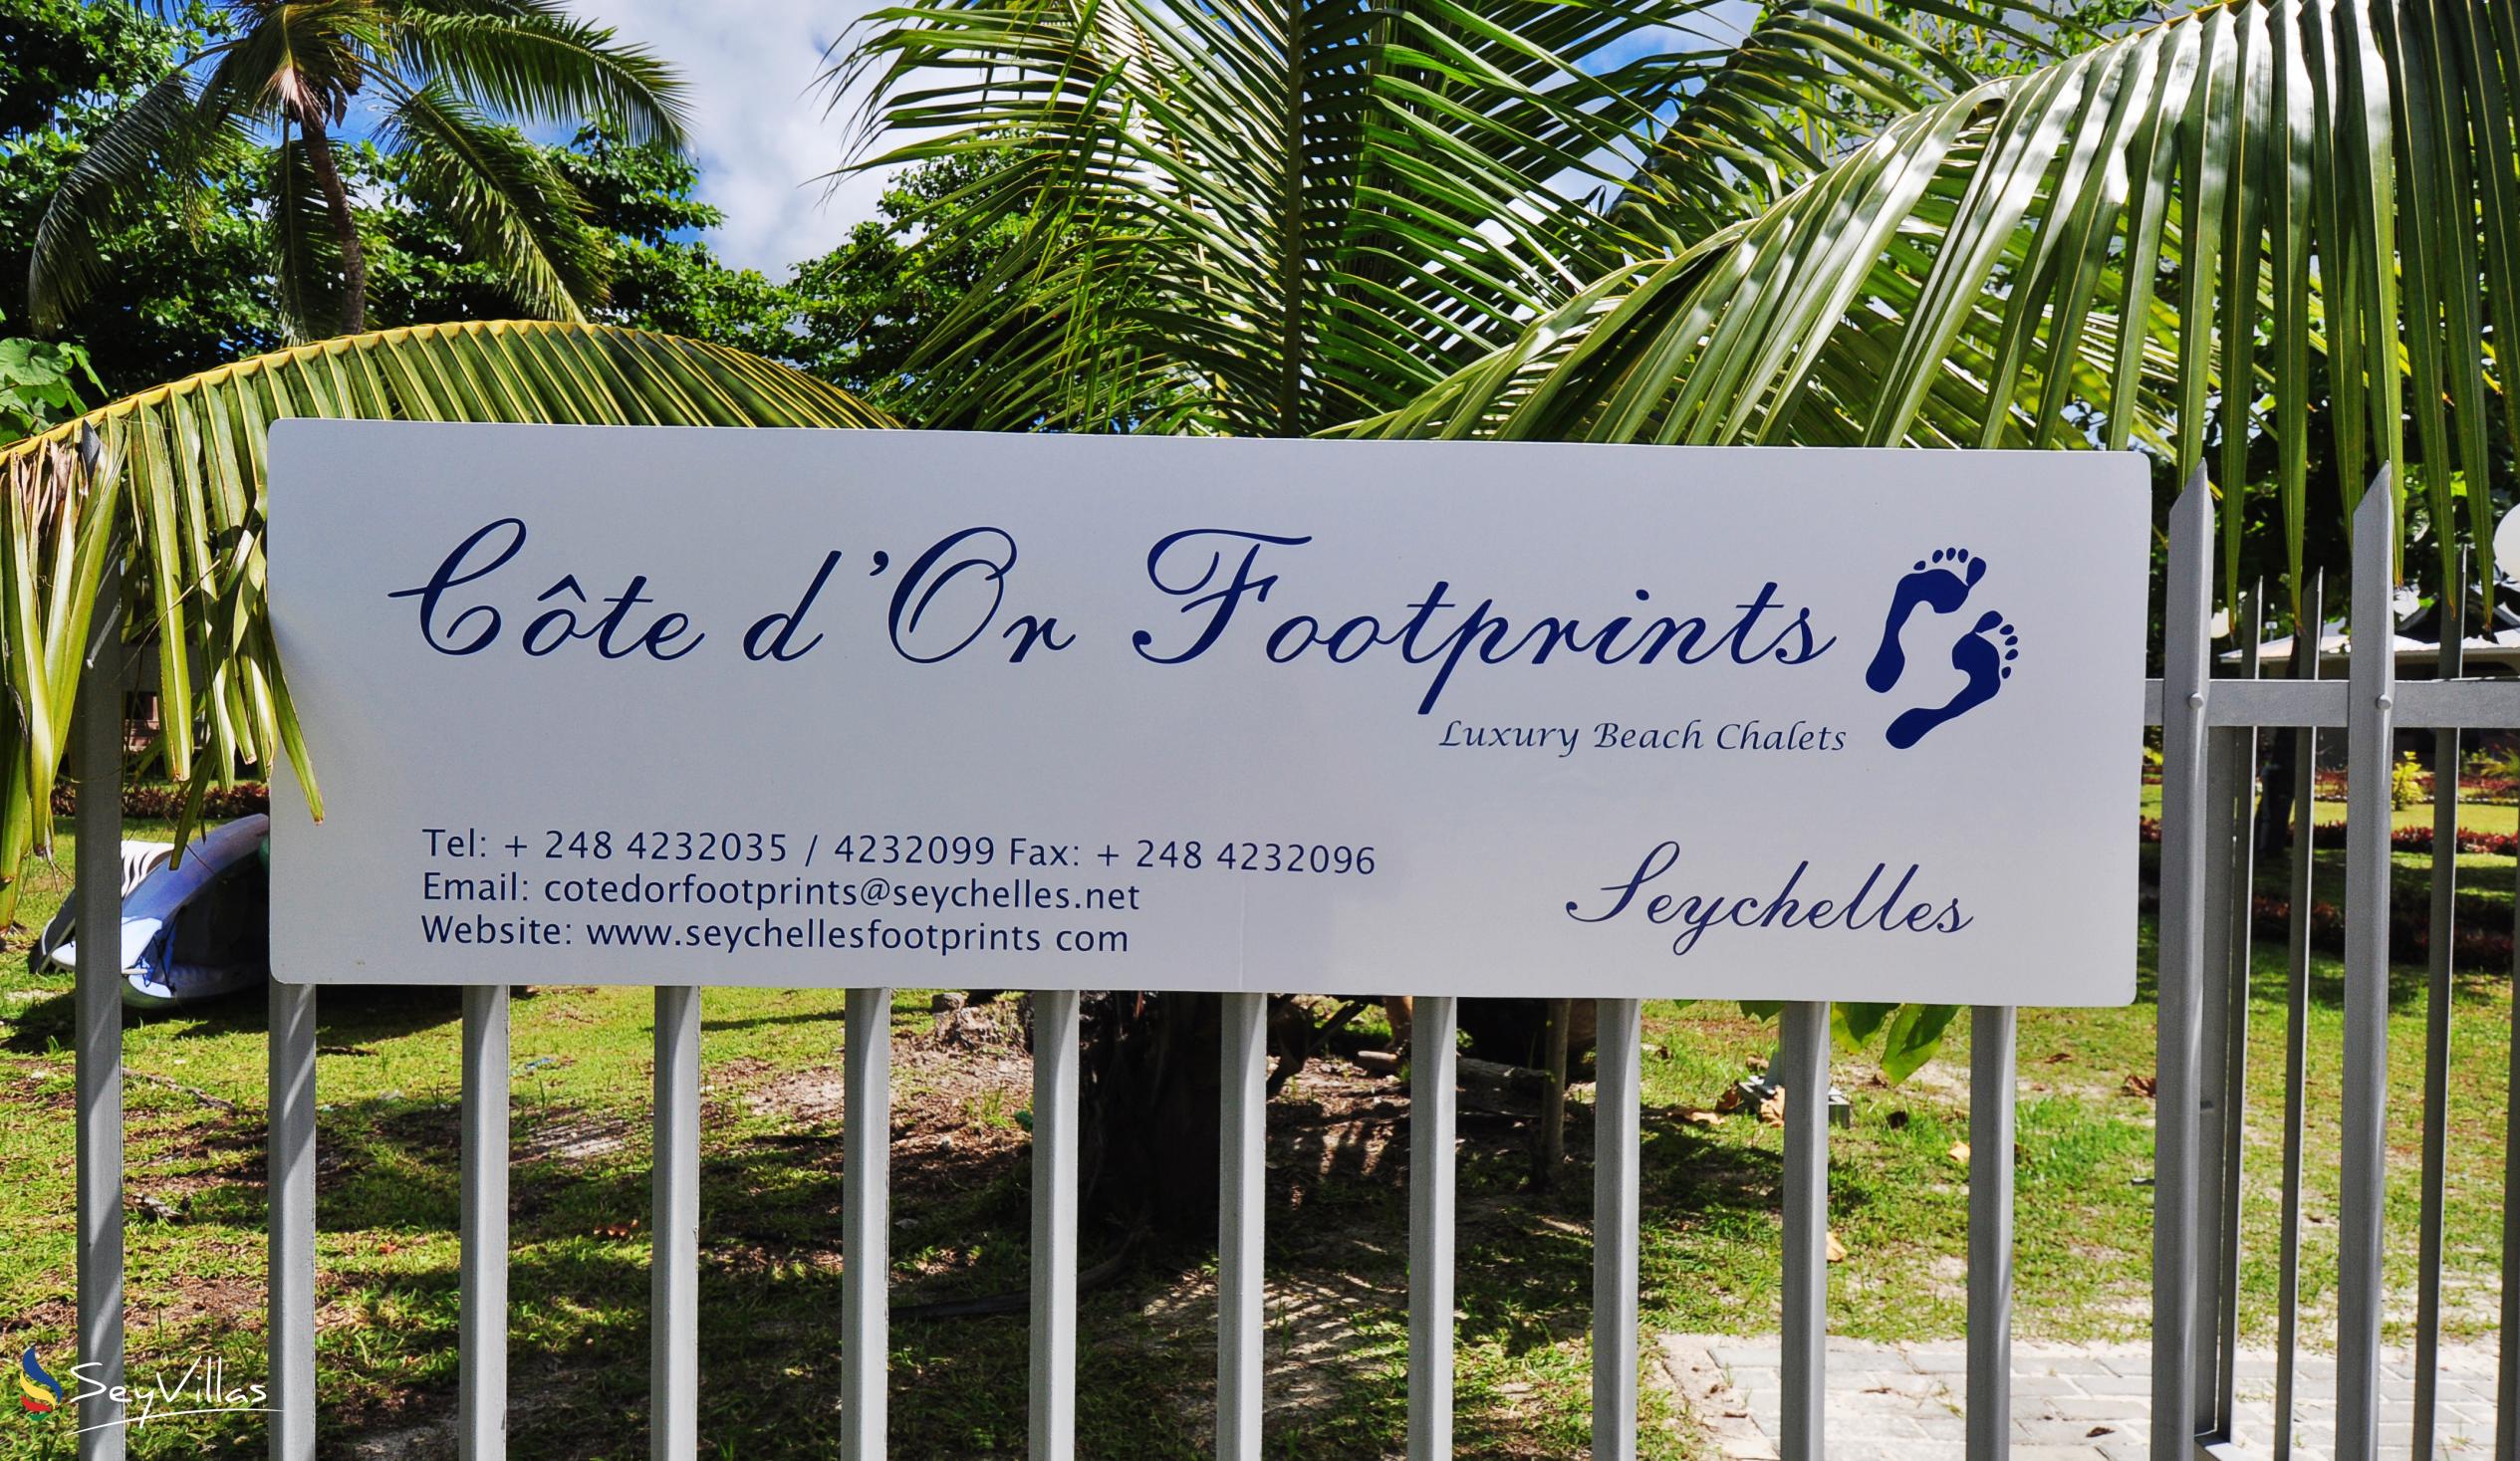 Foto 68: Cote d'Or Footprints - Aussenbereich - Praslin (Seychellen)